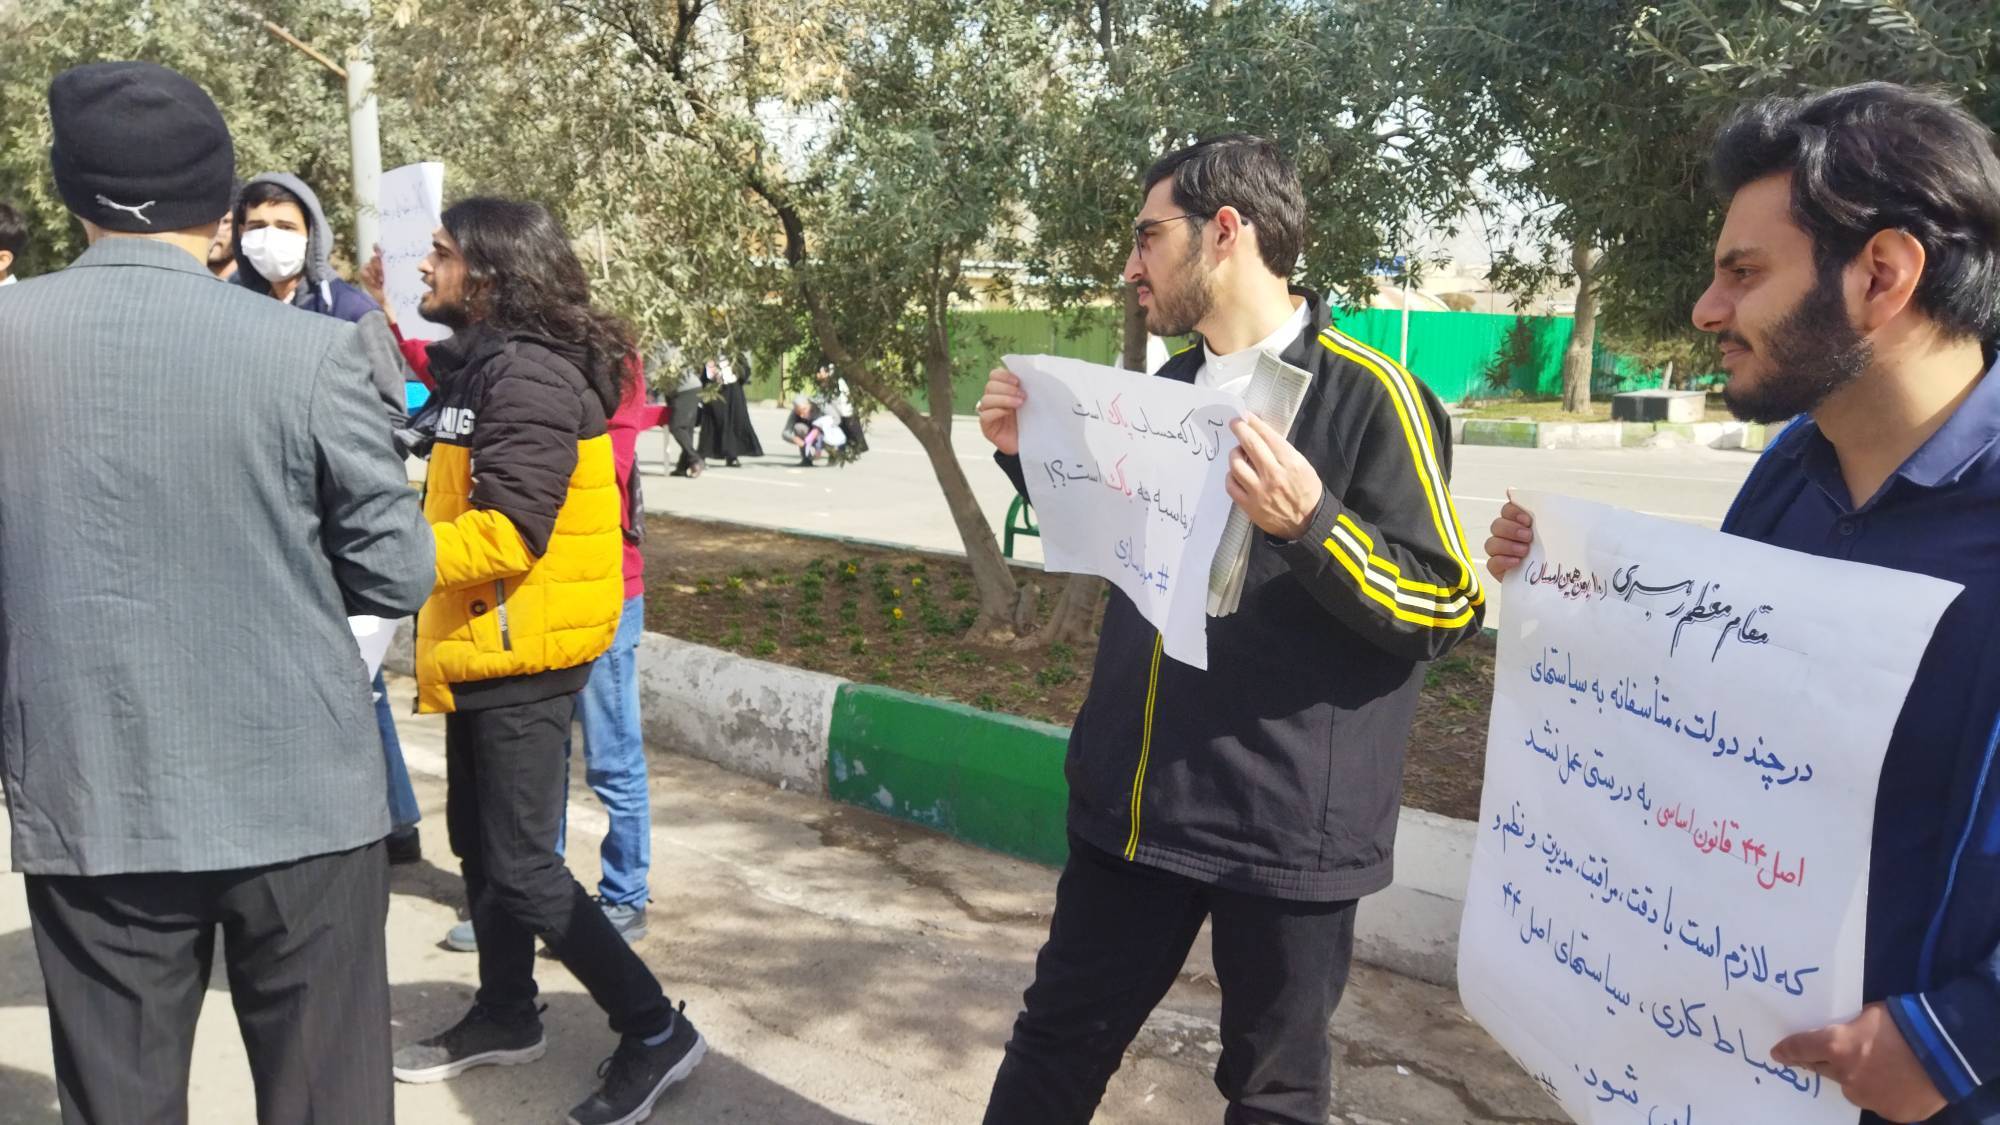 اعتراض دانشجویان بسیجی پردیس فنی و مهندسی شهید عباسپور پیرامون مصوبه مولدسازی